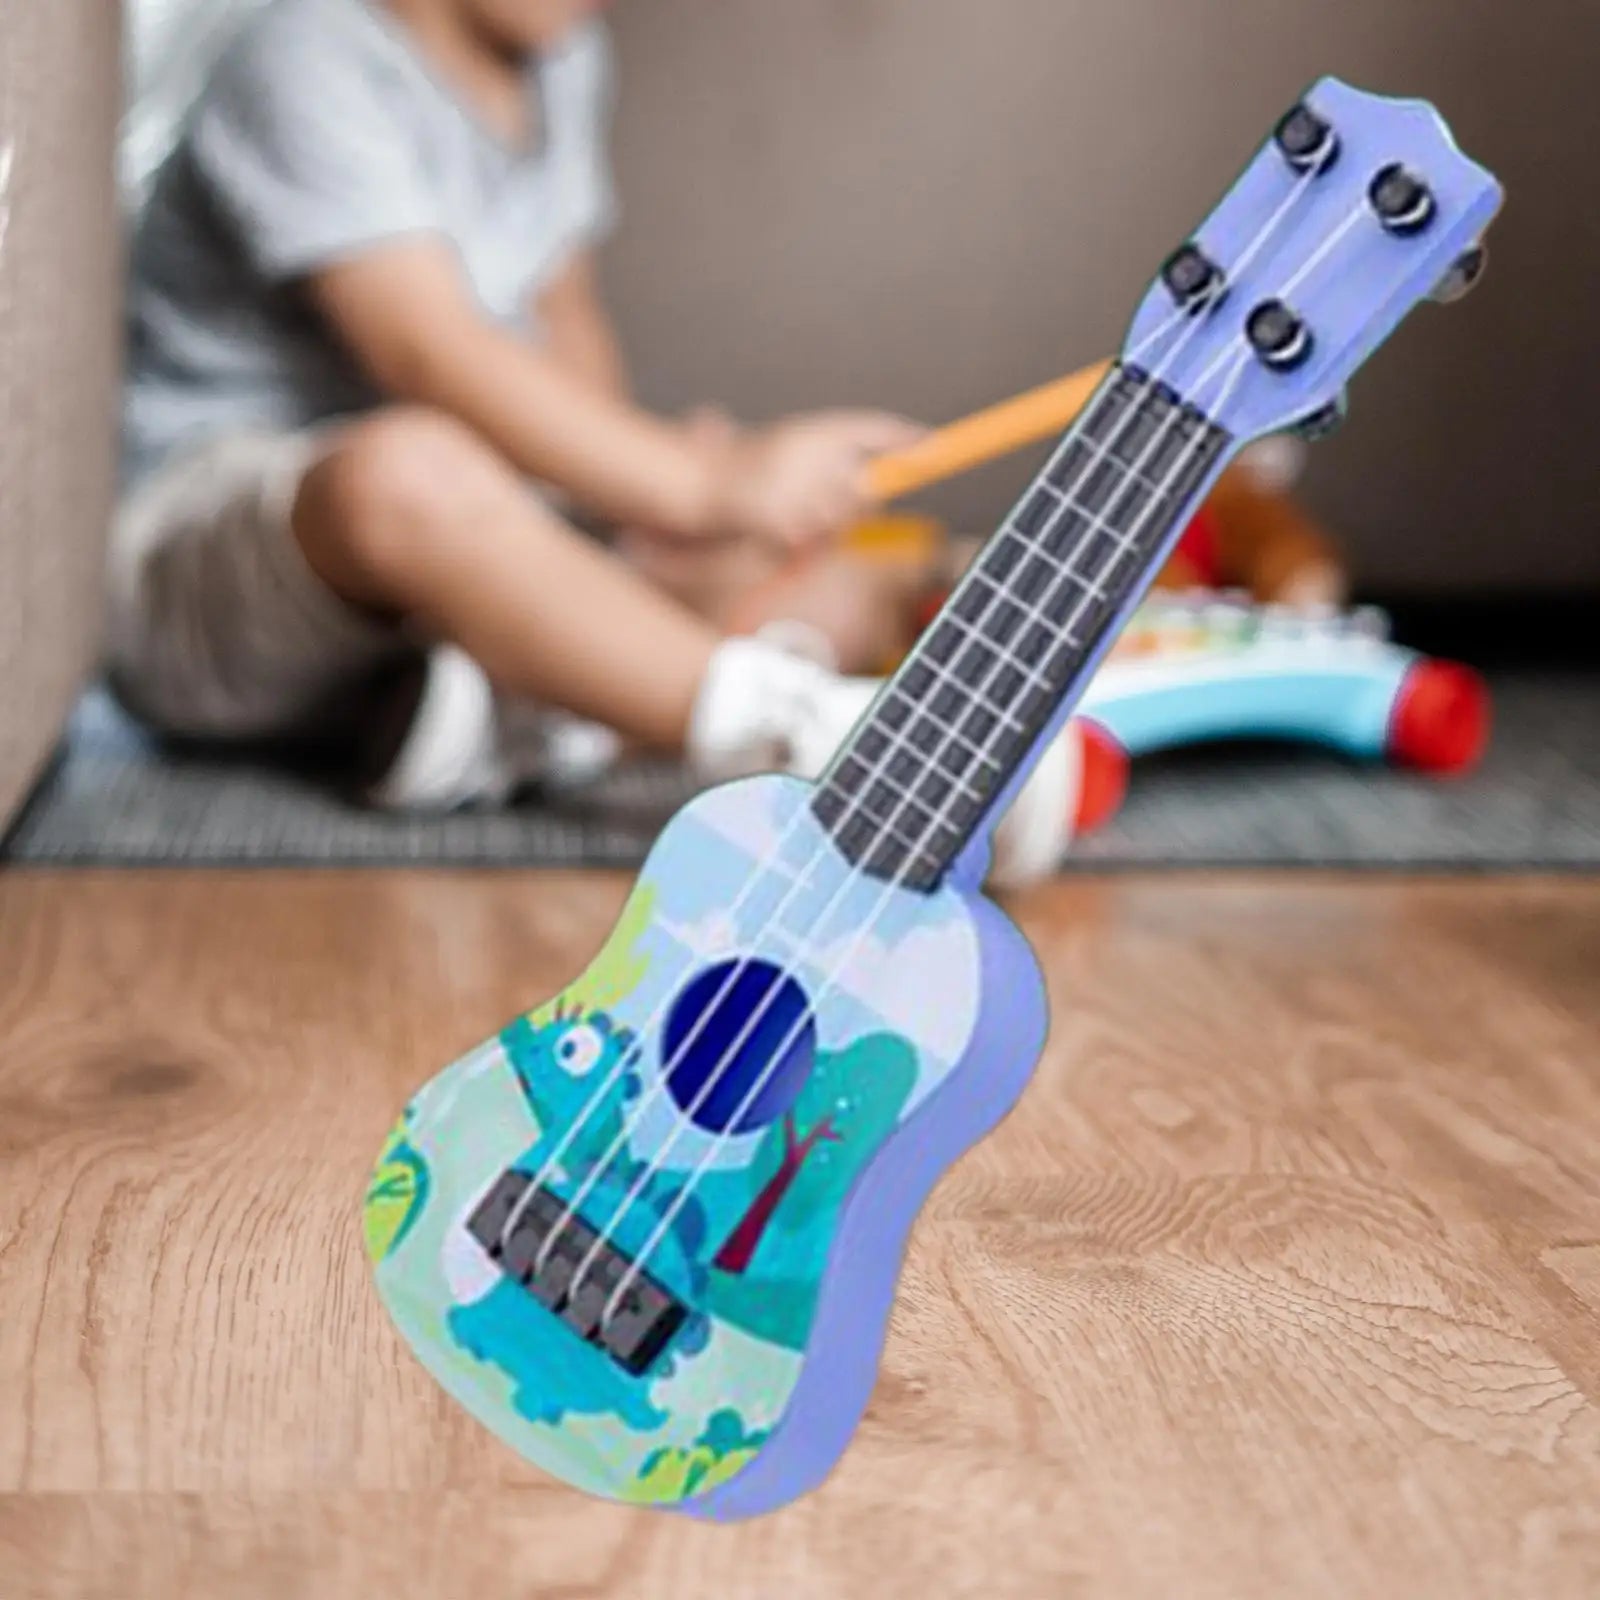 Mini Ukulele Guitar Toy for Early Education of Children - ToylandEU